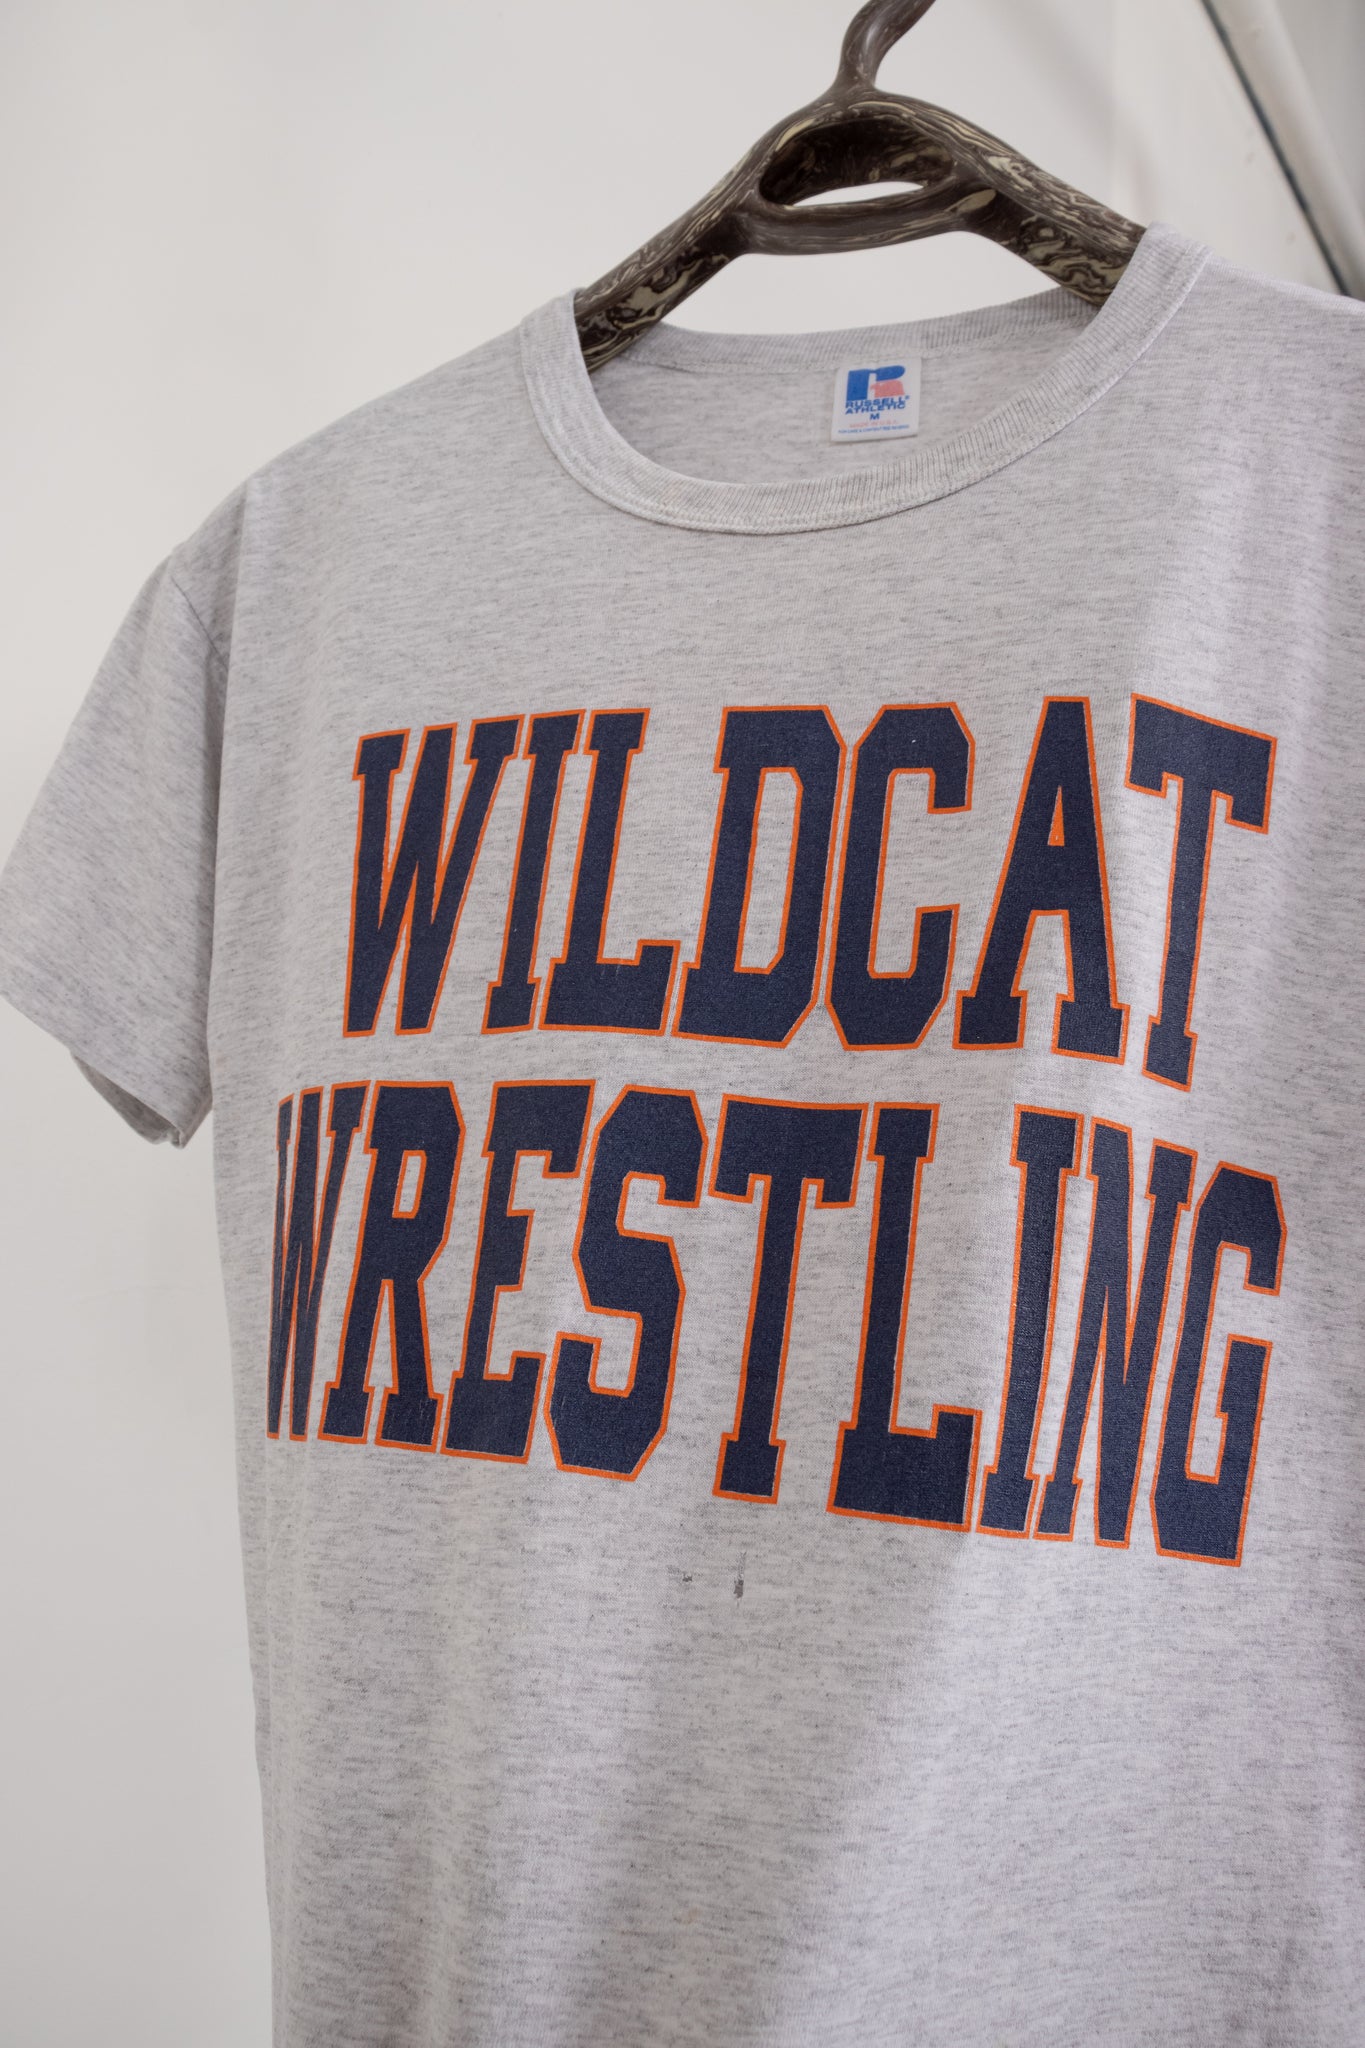 Wildcat Wrestling